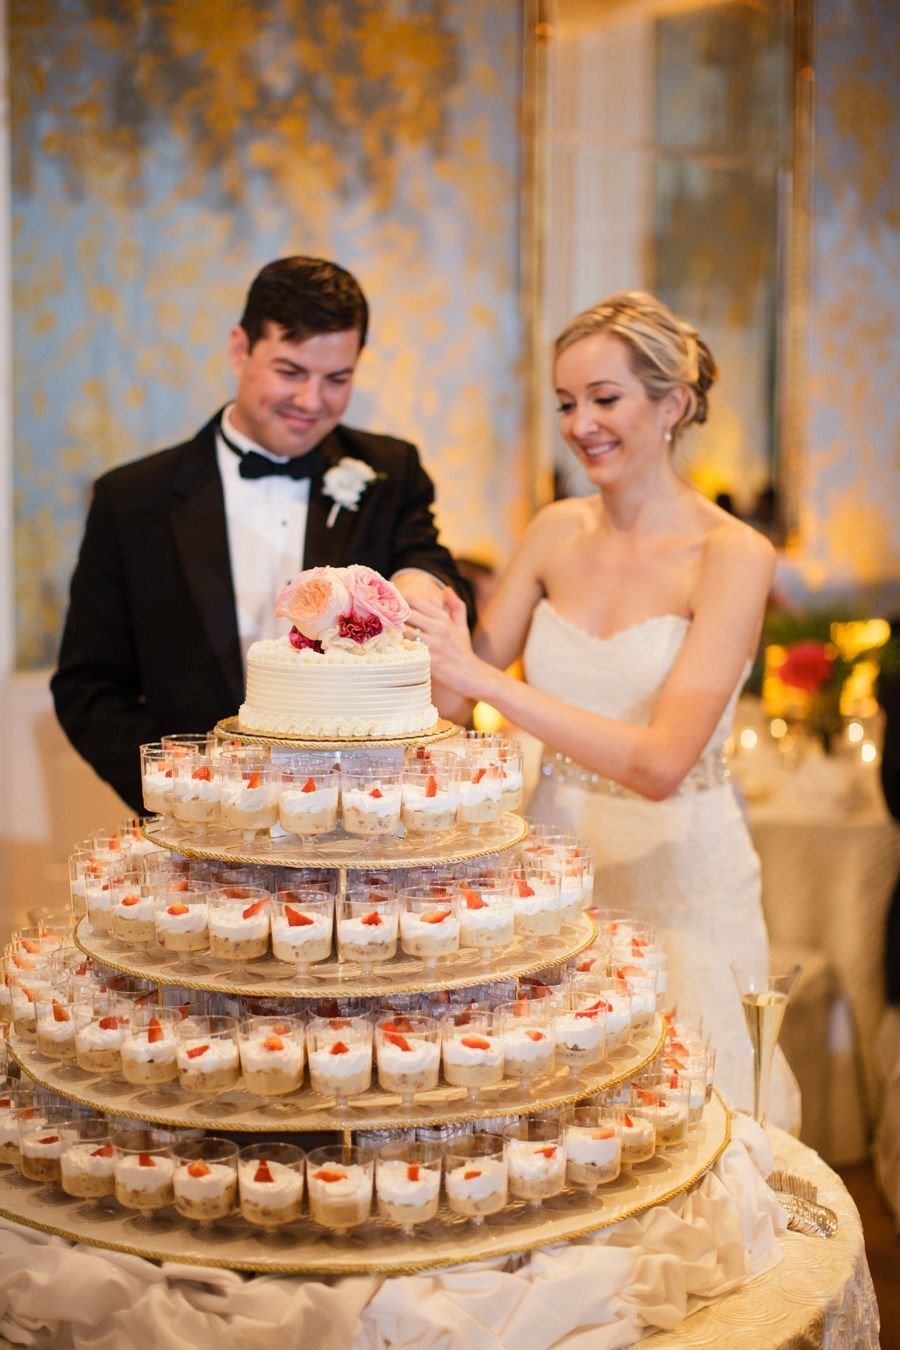 Торт свадебный двухъярусный кремовый